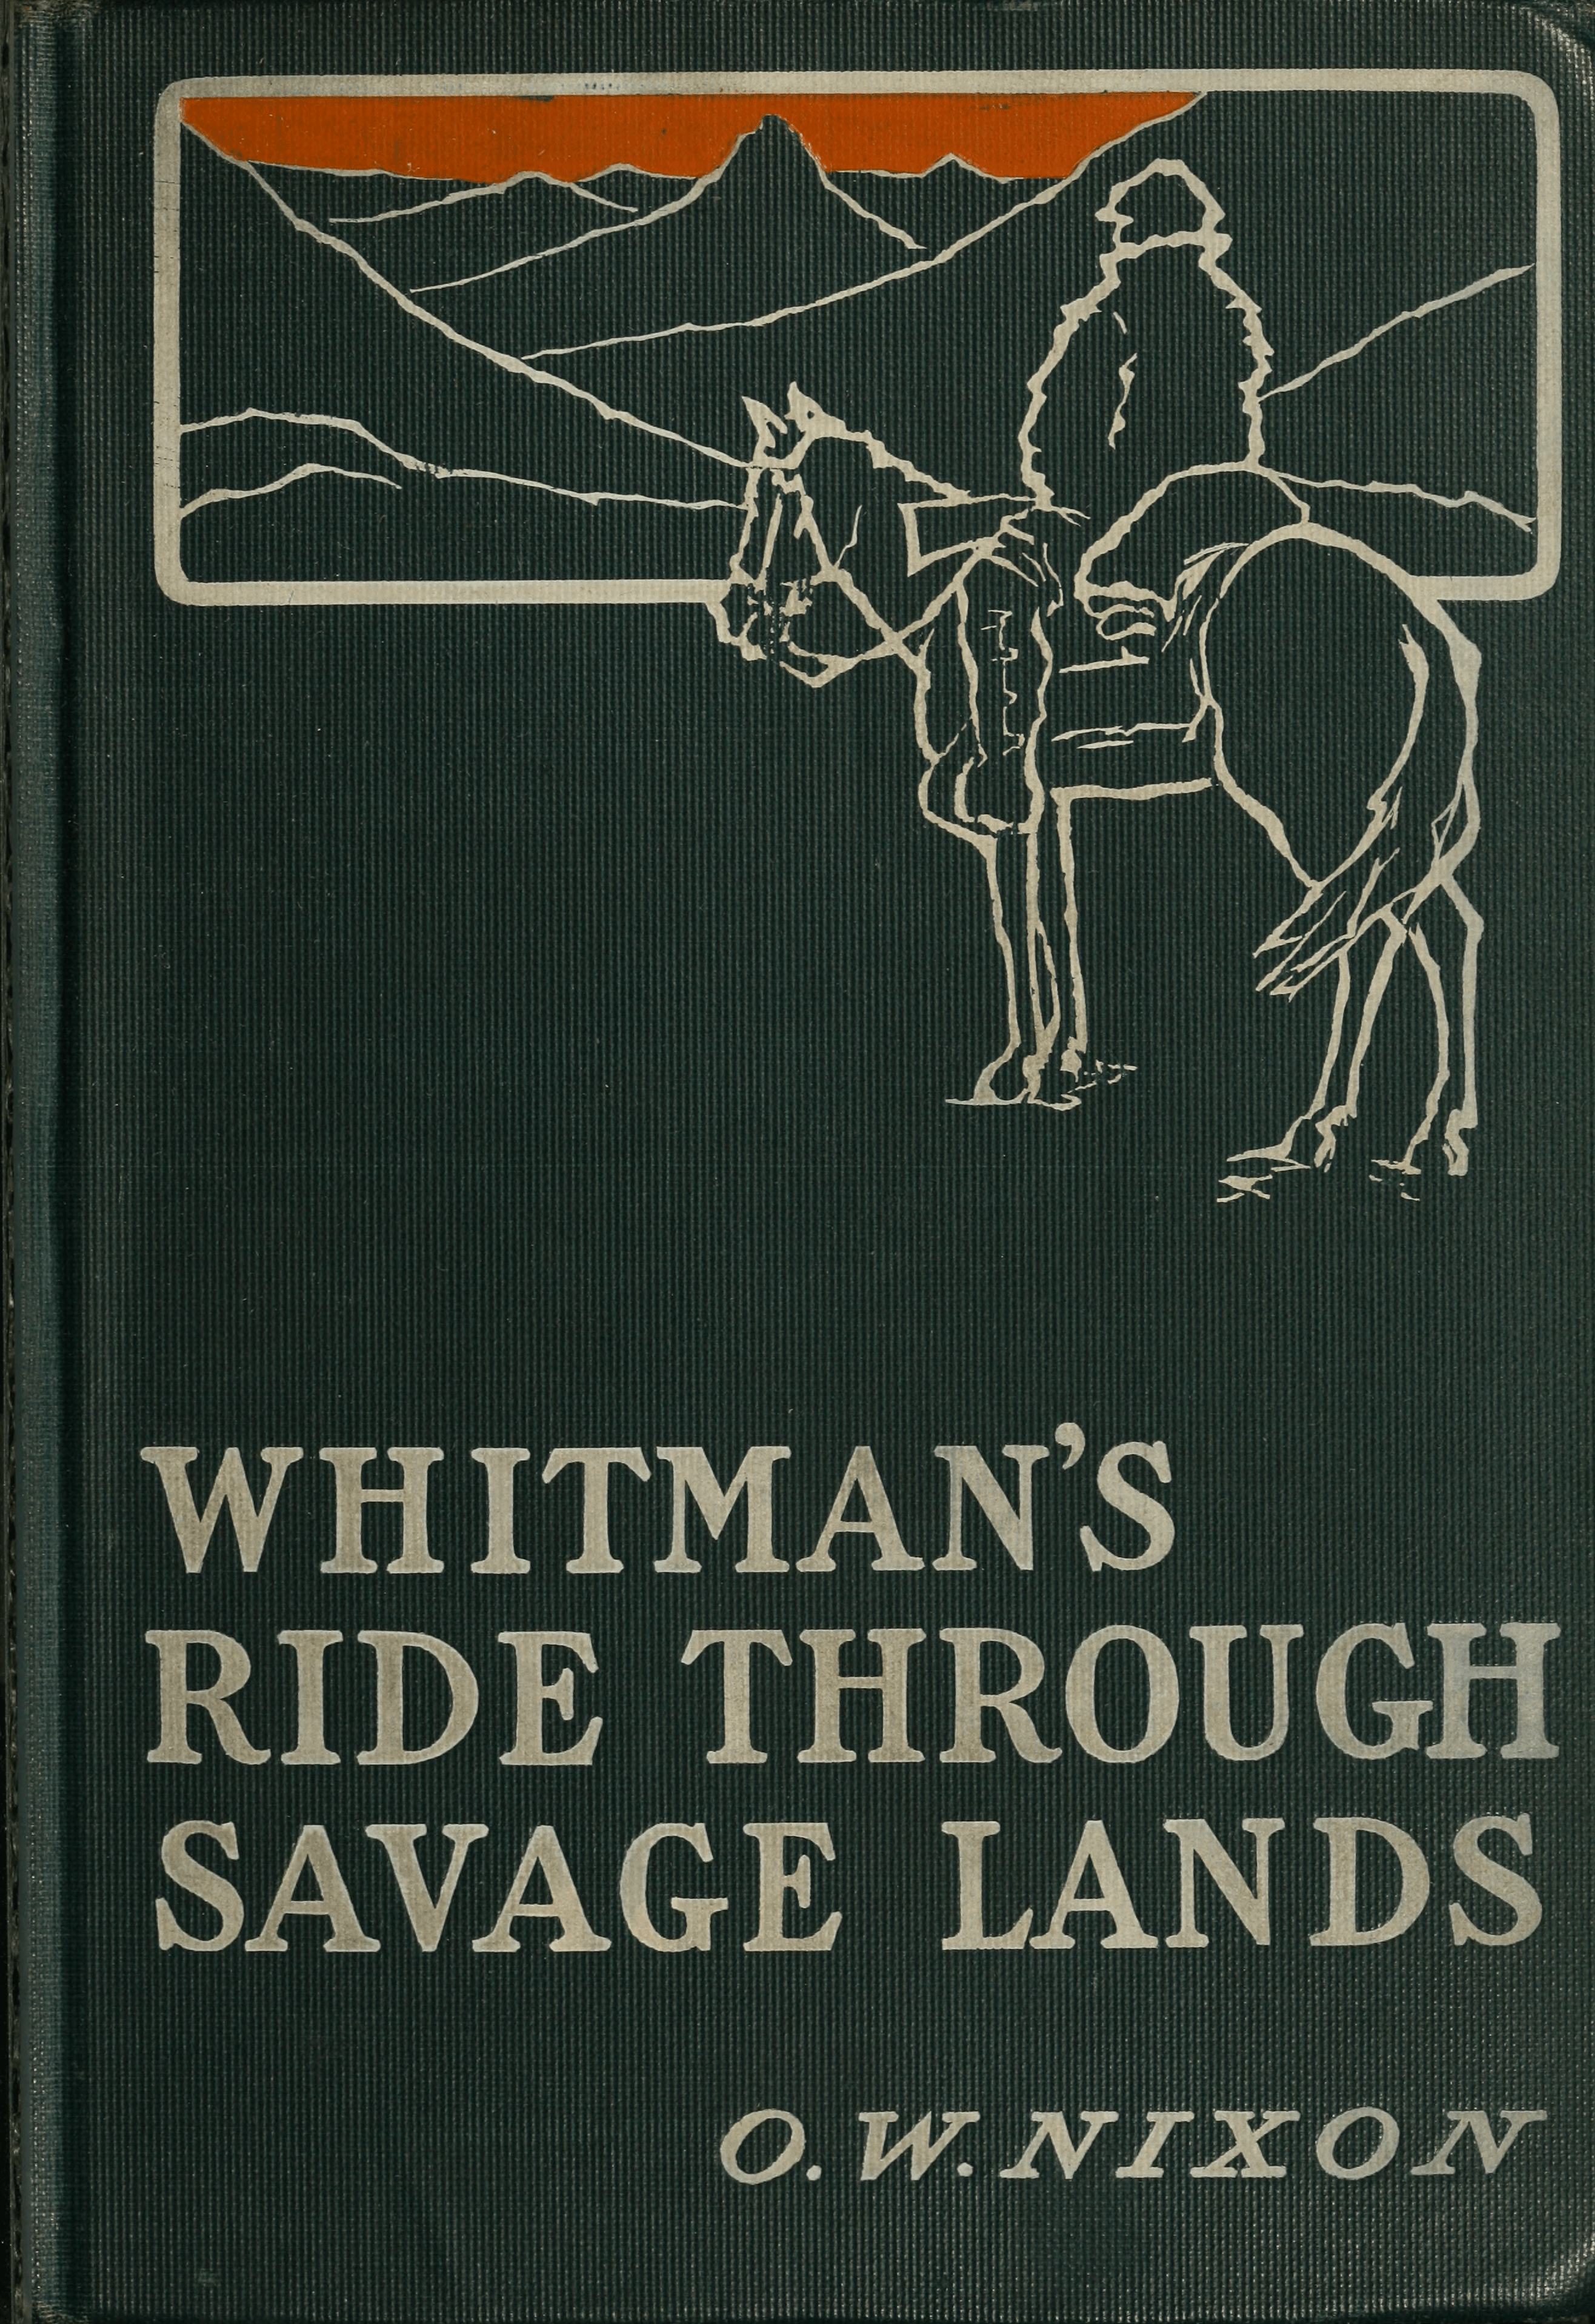 Savage Lands Logo - Whitman's Ride through Savage Lands cover.png